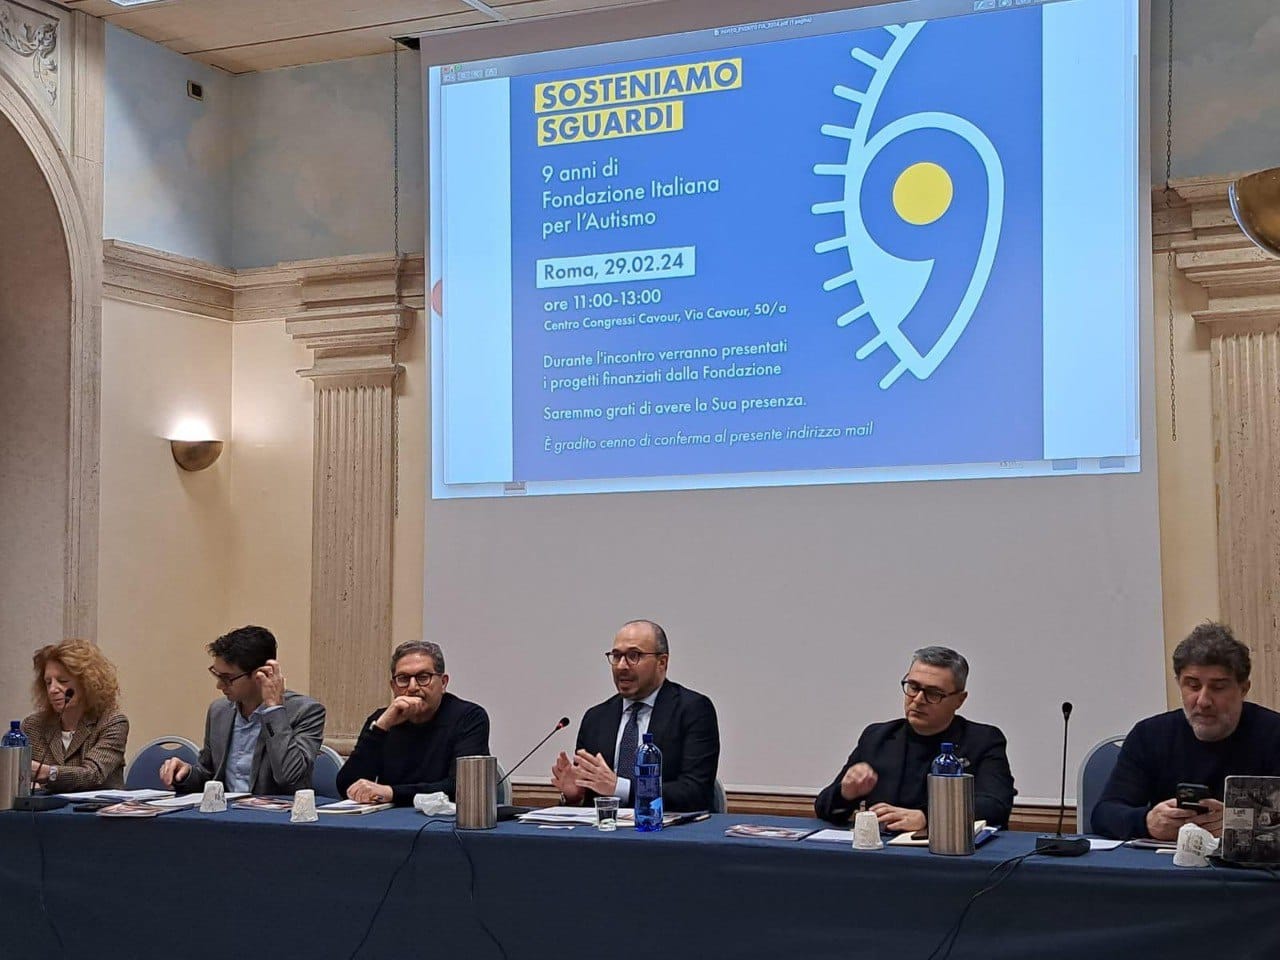 Convegno della Fondazione Italiana per l'Autismo (FIA)